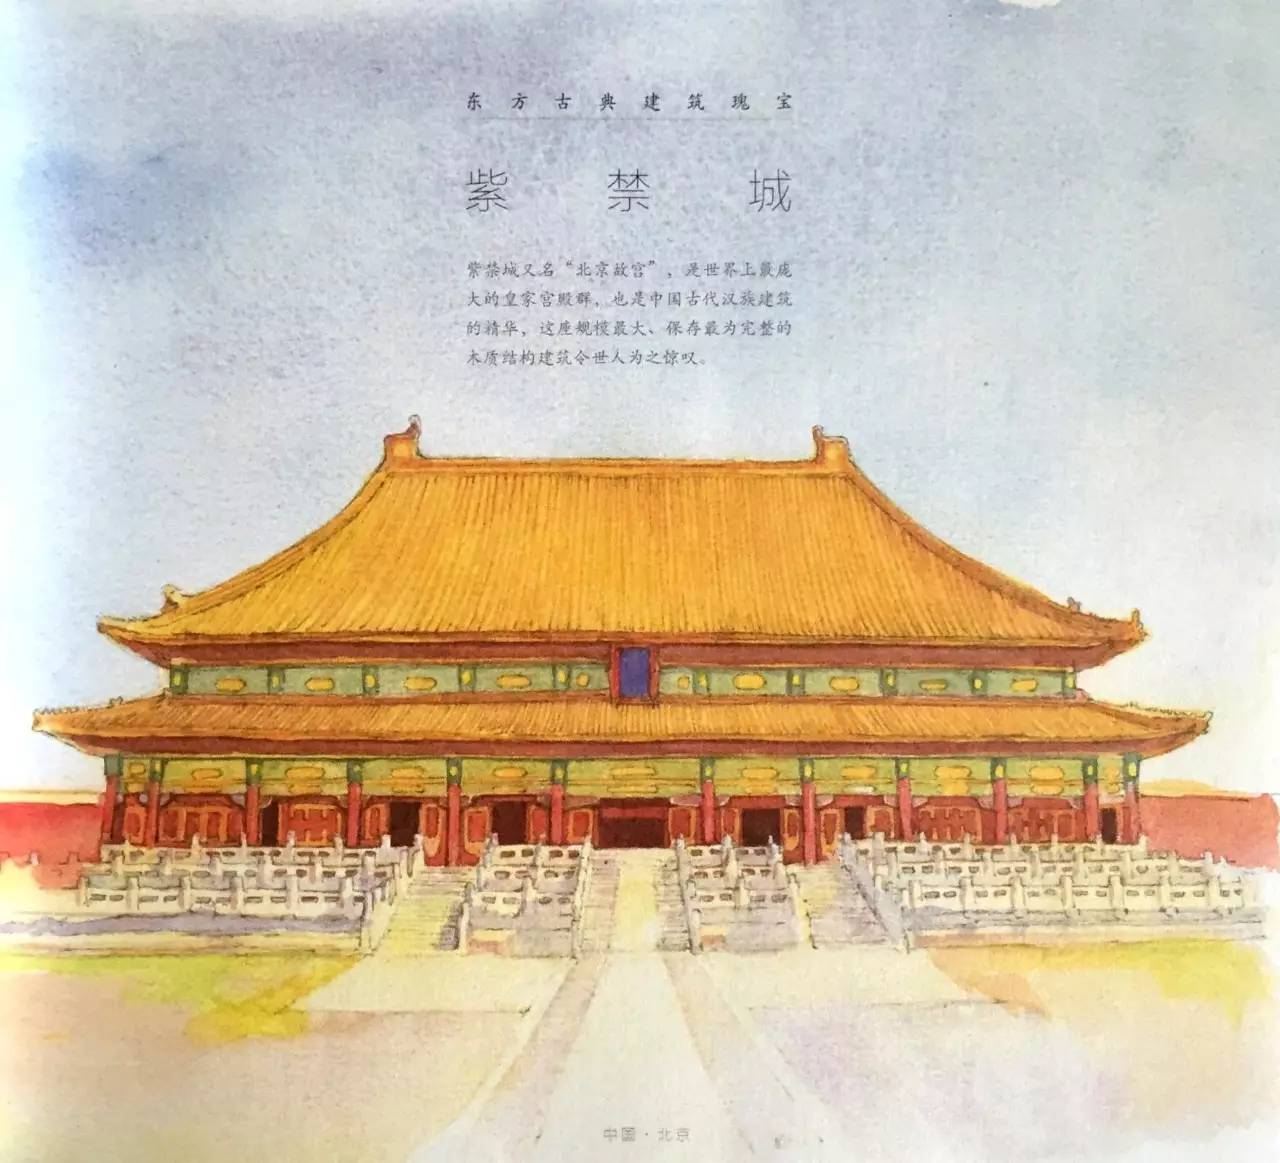 紫禁城又名"北京故宫,是世界上最庞大的皇家宫殿群,也是中国古代汉族